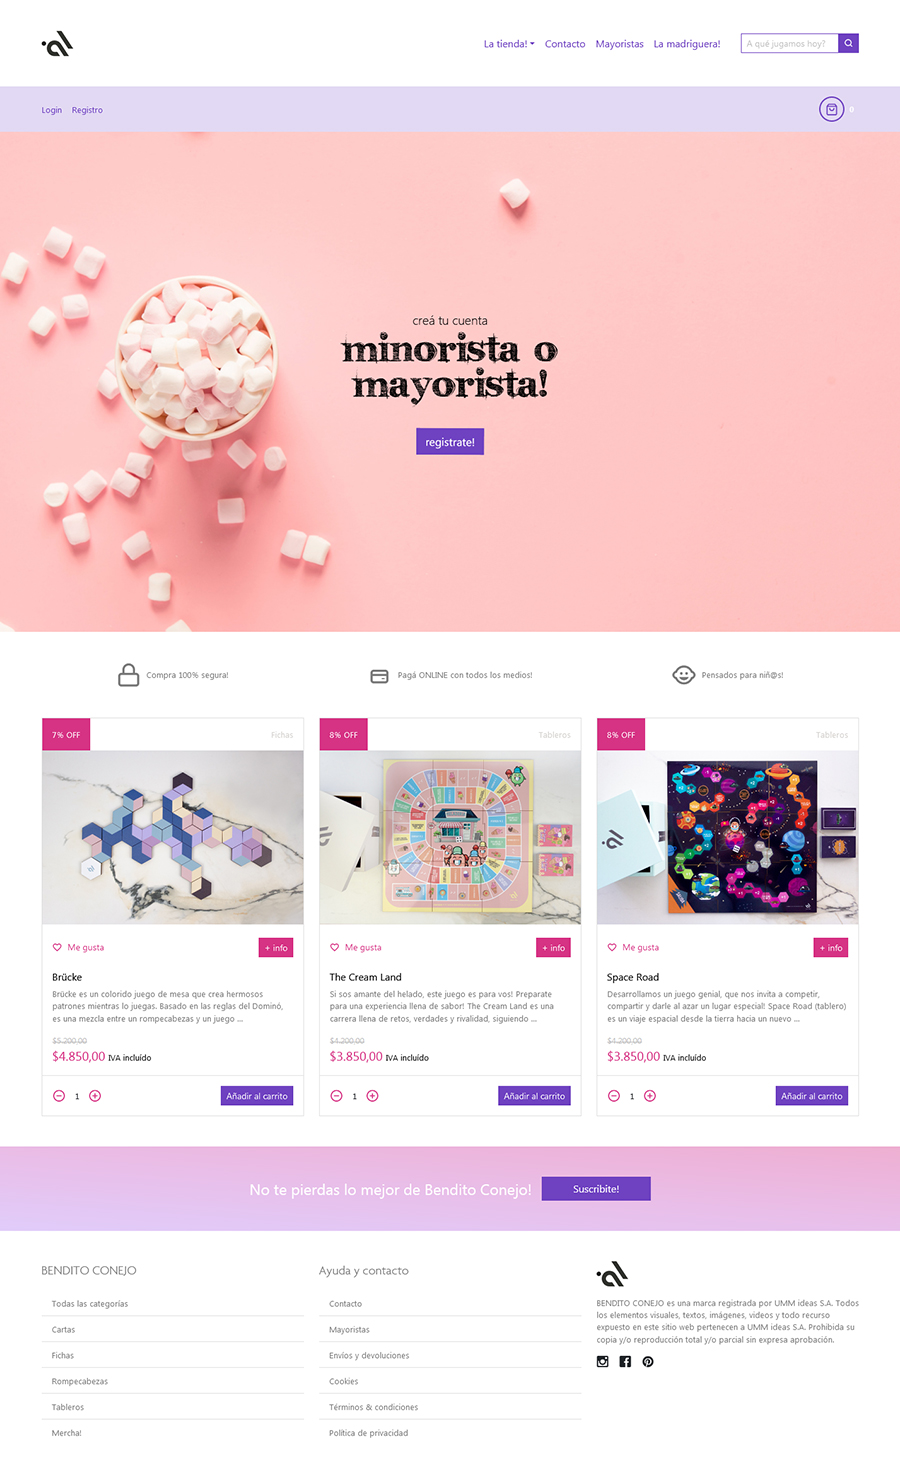 Diseño y desarrollo web e-commerce para Bendito Conejo by UMM ideas SA